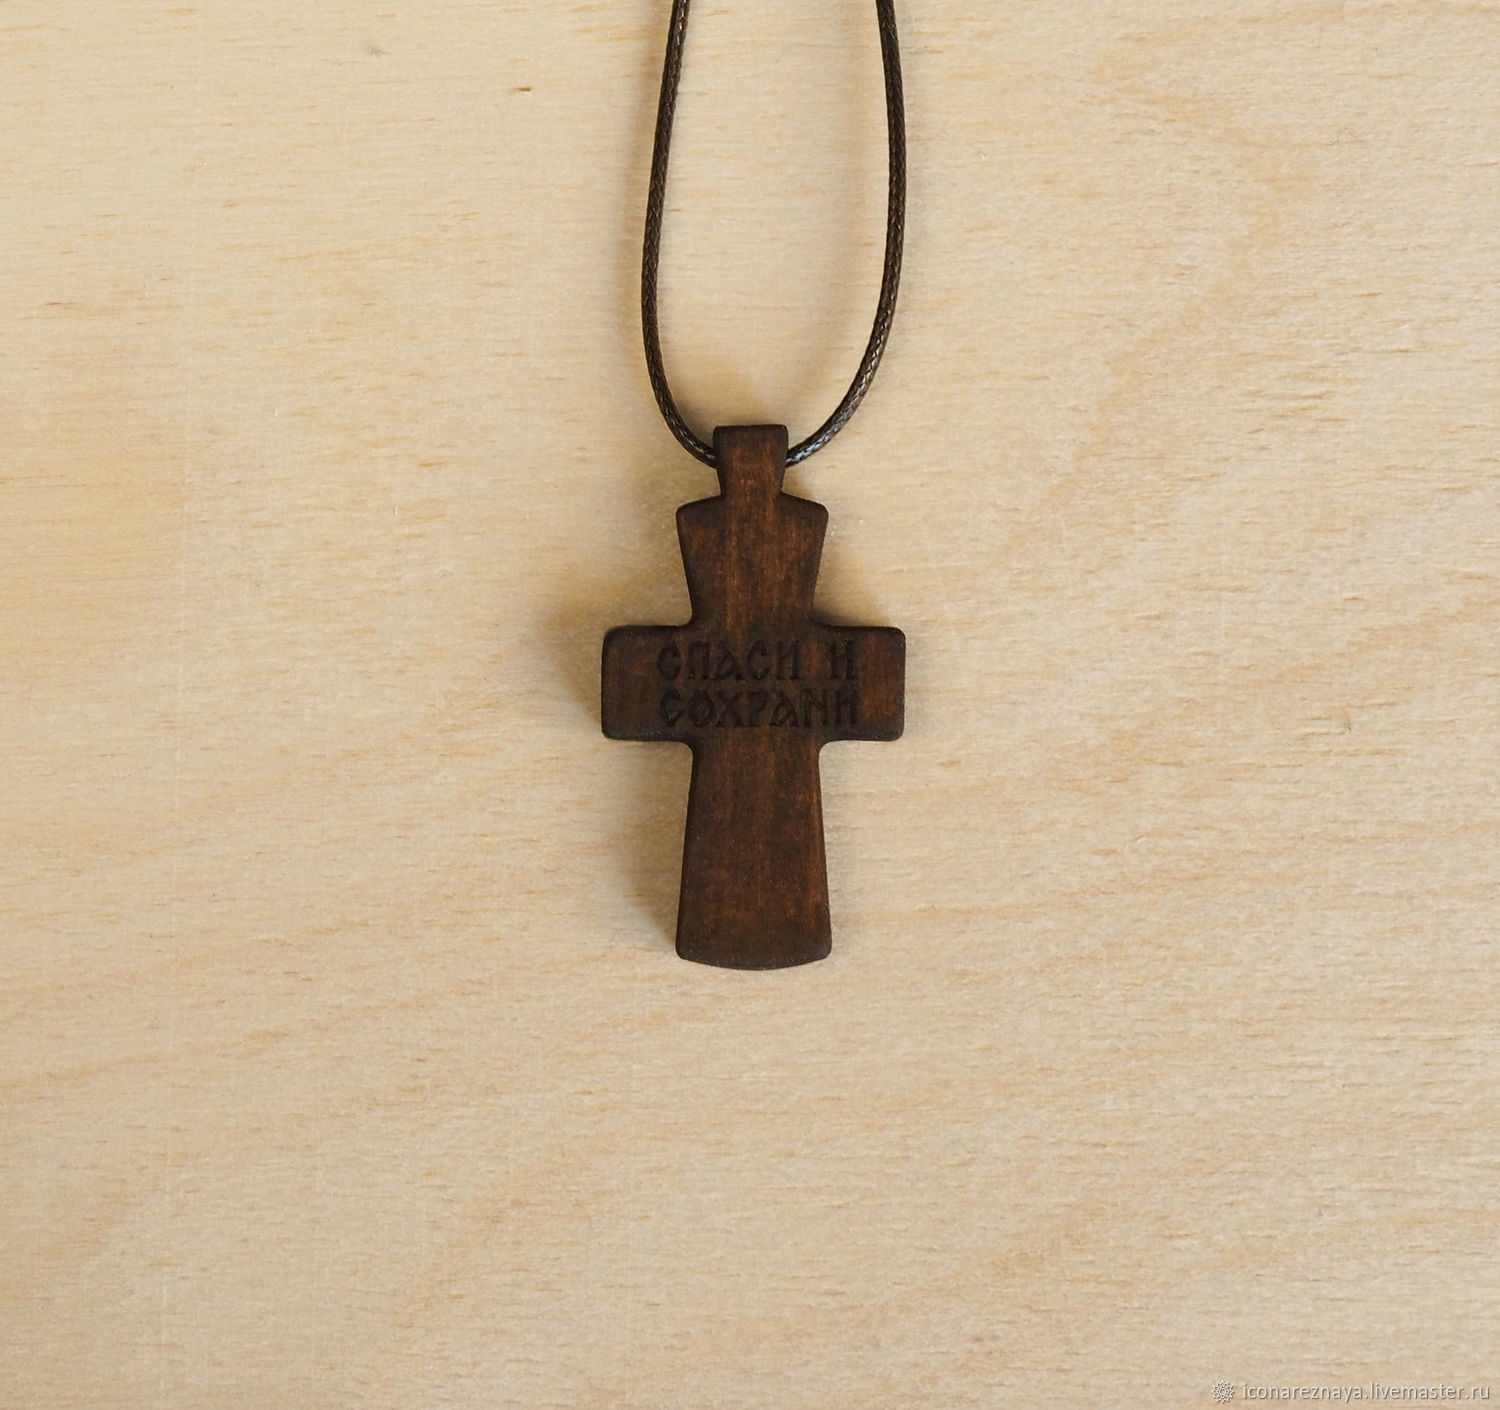 Купить нательный деревянный. Крест наперсный деревянный. Наперсный крест ;thtdzyysq\. Деревянный крестик нательный.